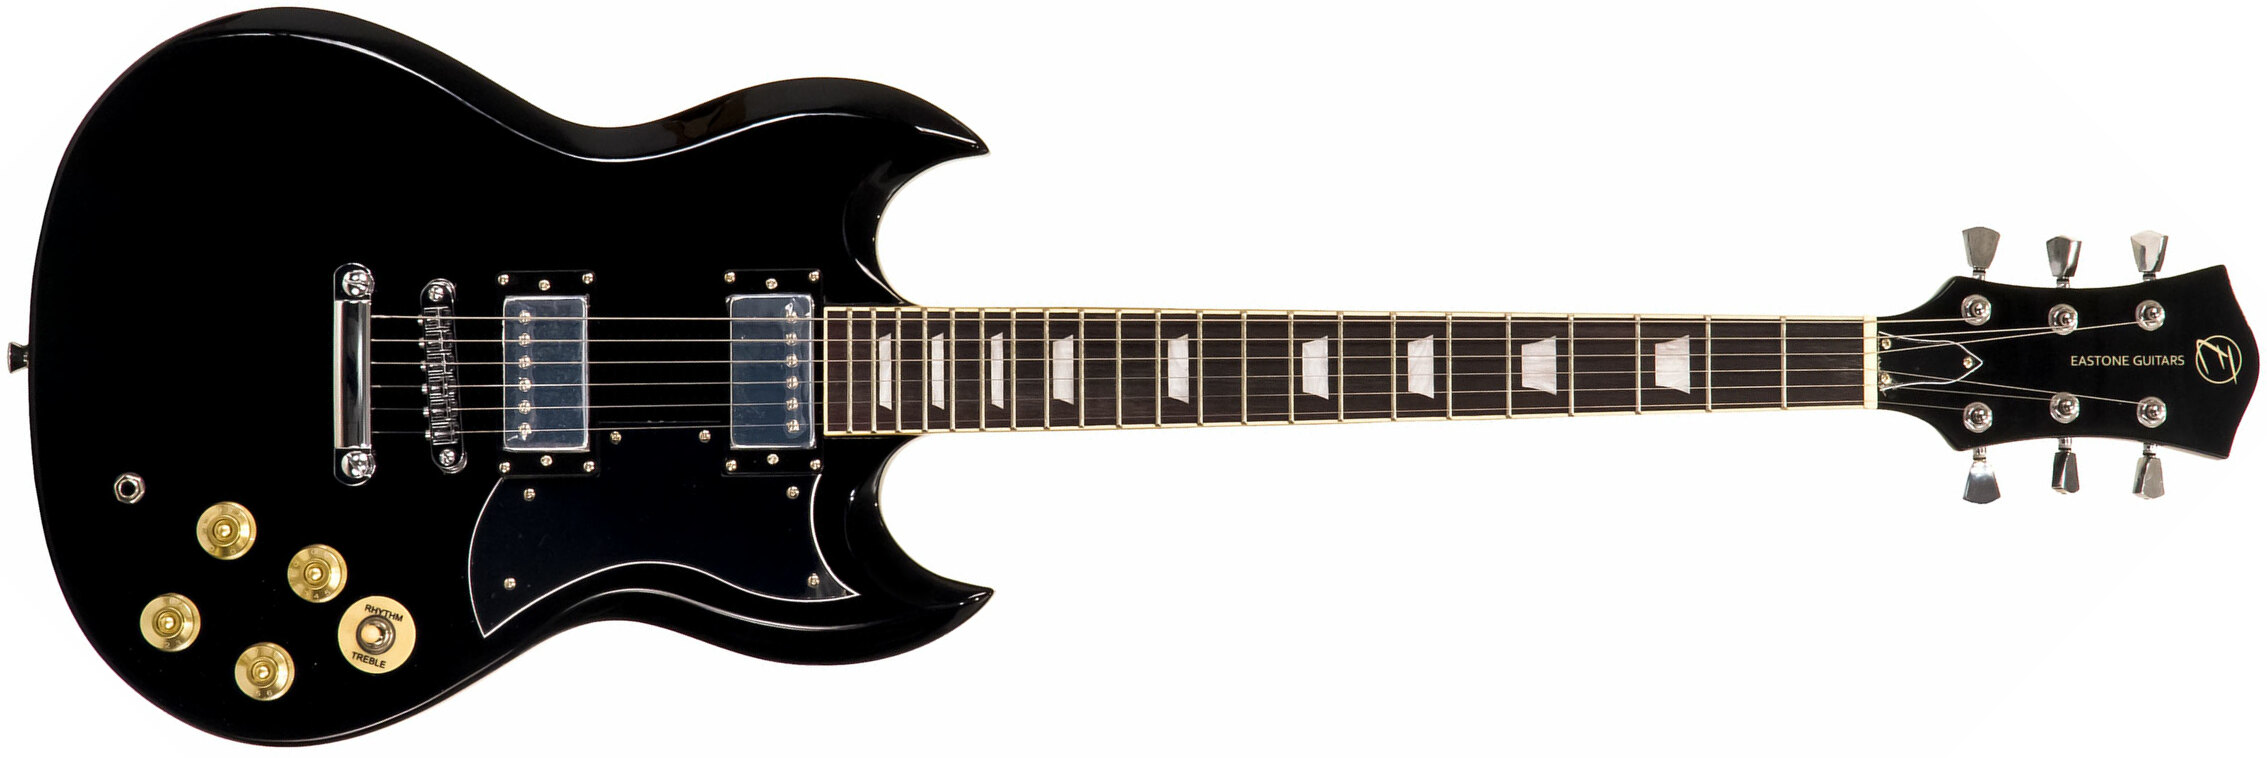 Eastone Sdc70 Hh Ht Pur - Black - Retro-Rock-E-Gitarre - Main picture